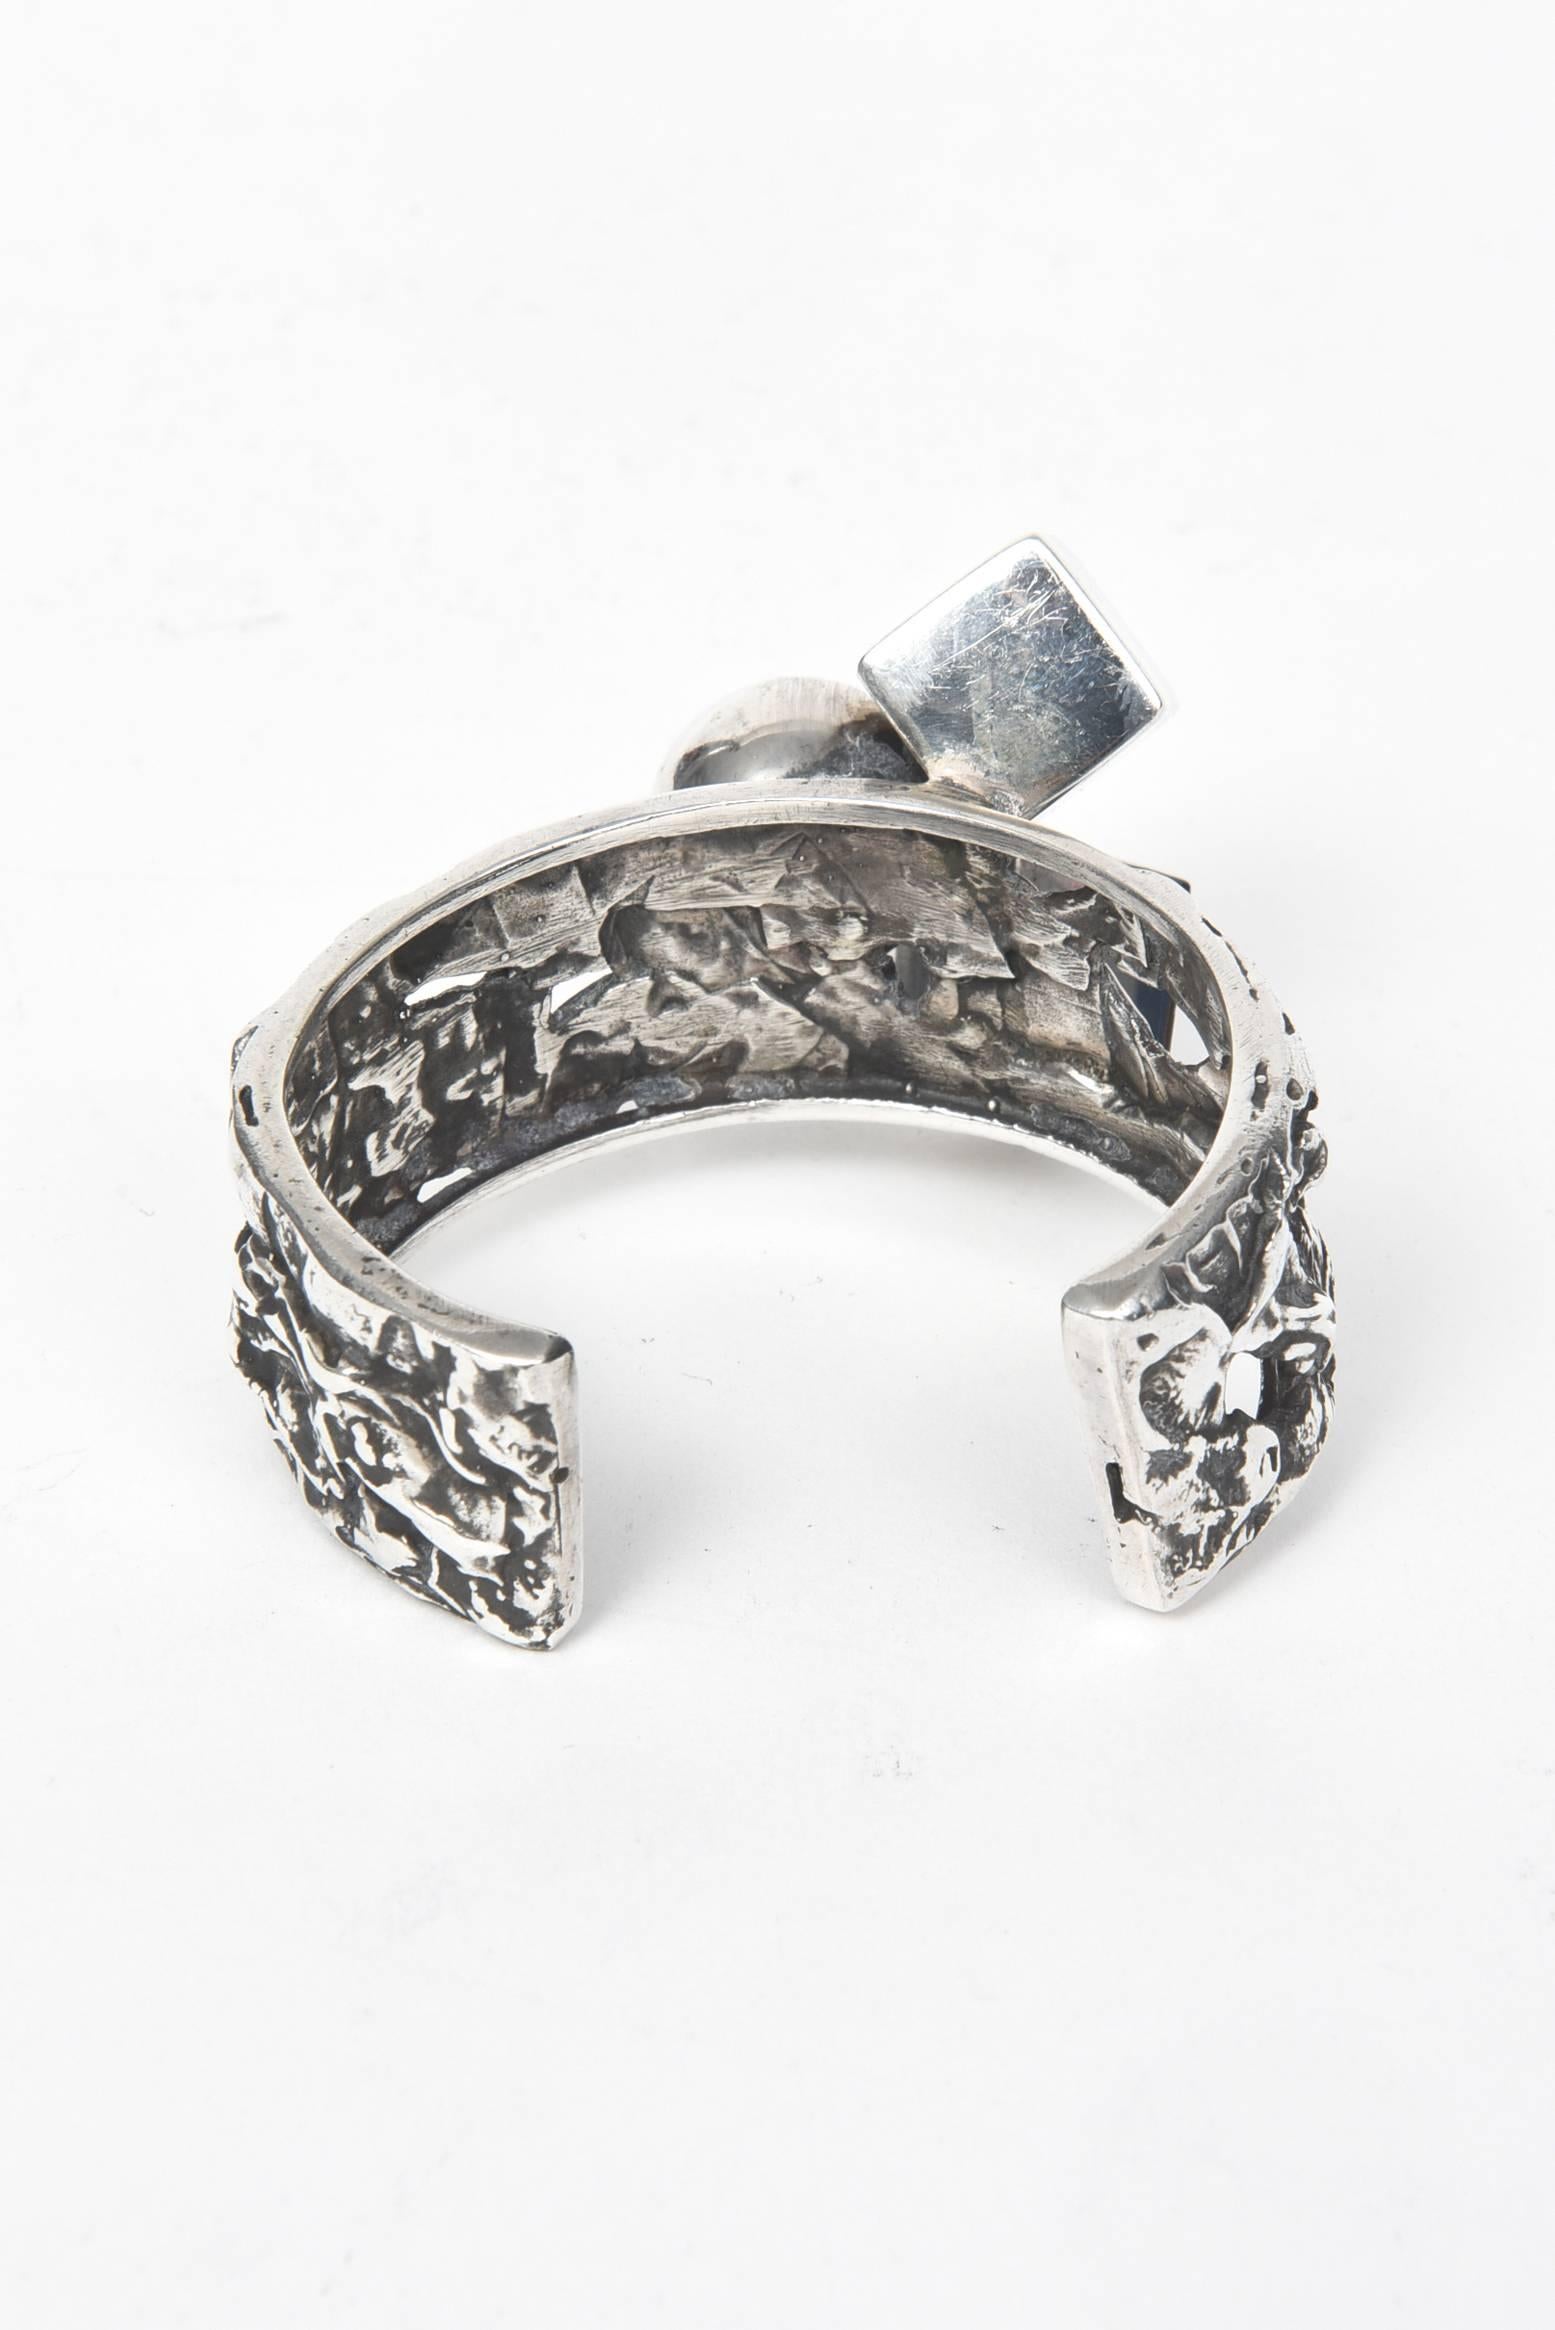 Modernist Brutalist Design Sterling Silver Cuff Bracelet by Rachel Gera For Sale 1